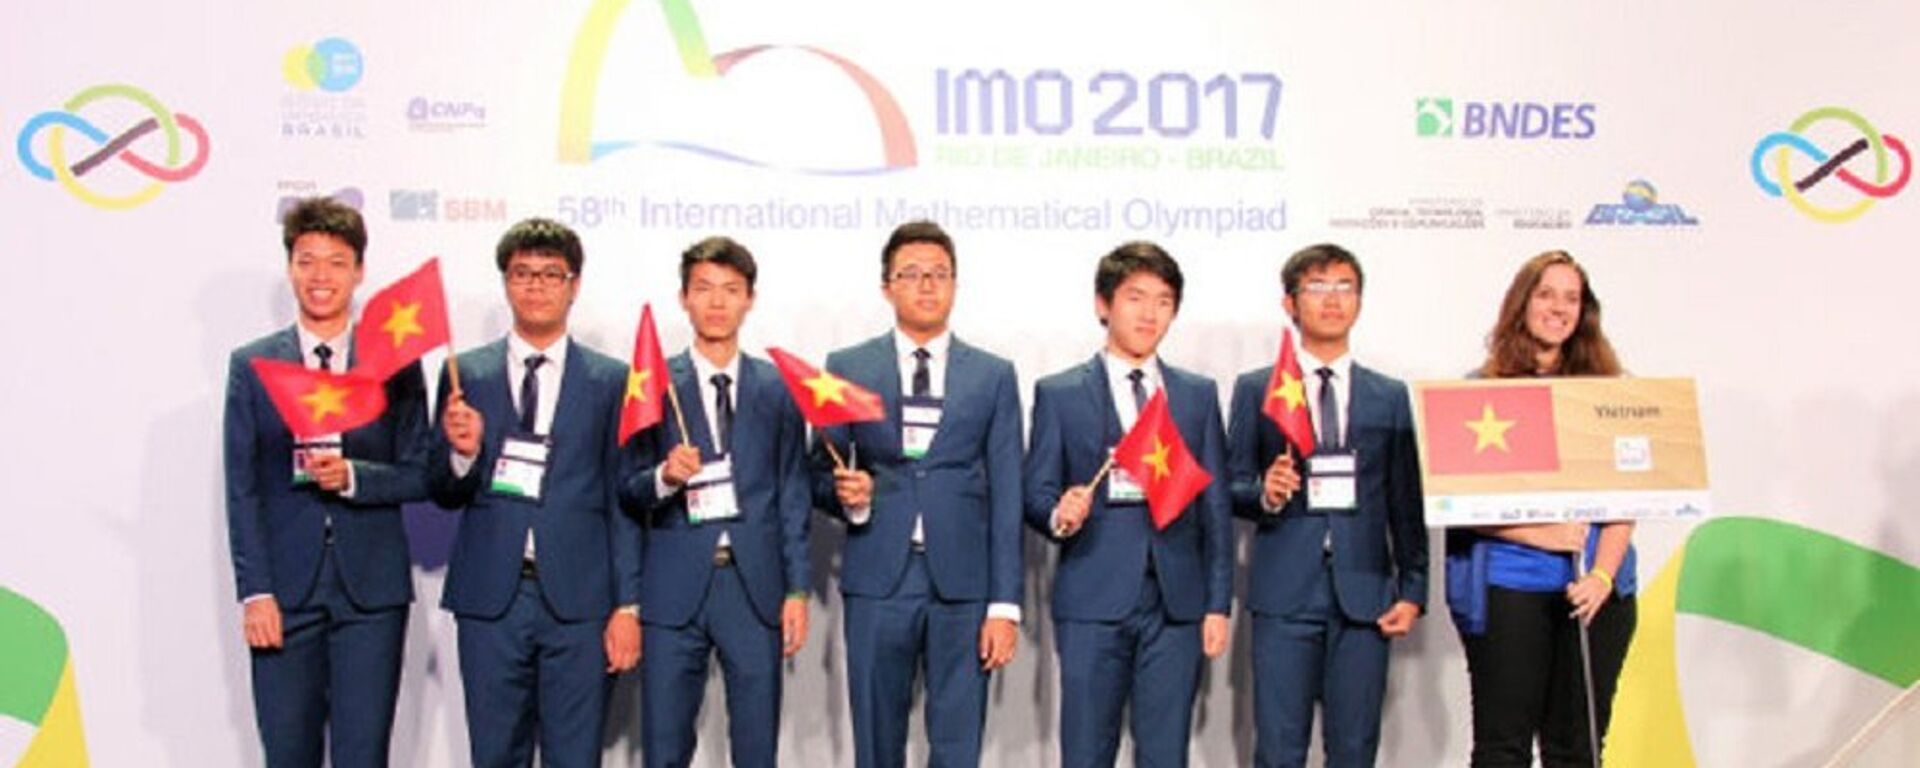 6 thí sinh đội tuyển quốc gia Việt Nam đều giành huy chương tại kỳ thi Olympic Toán học quốc tế 2017 - Sputnik Việt Nam, 1920, 25.07.2017